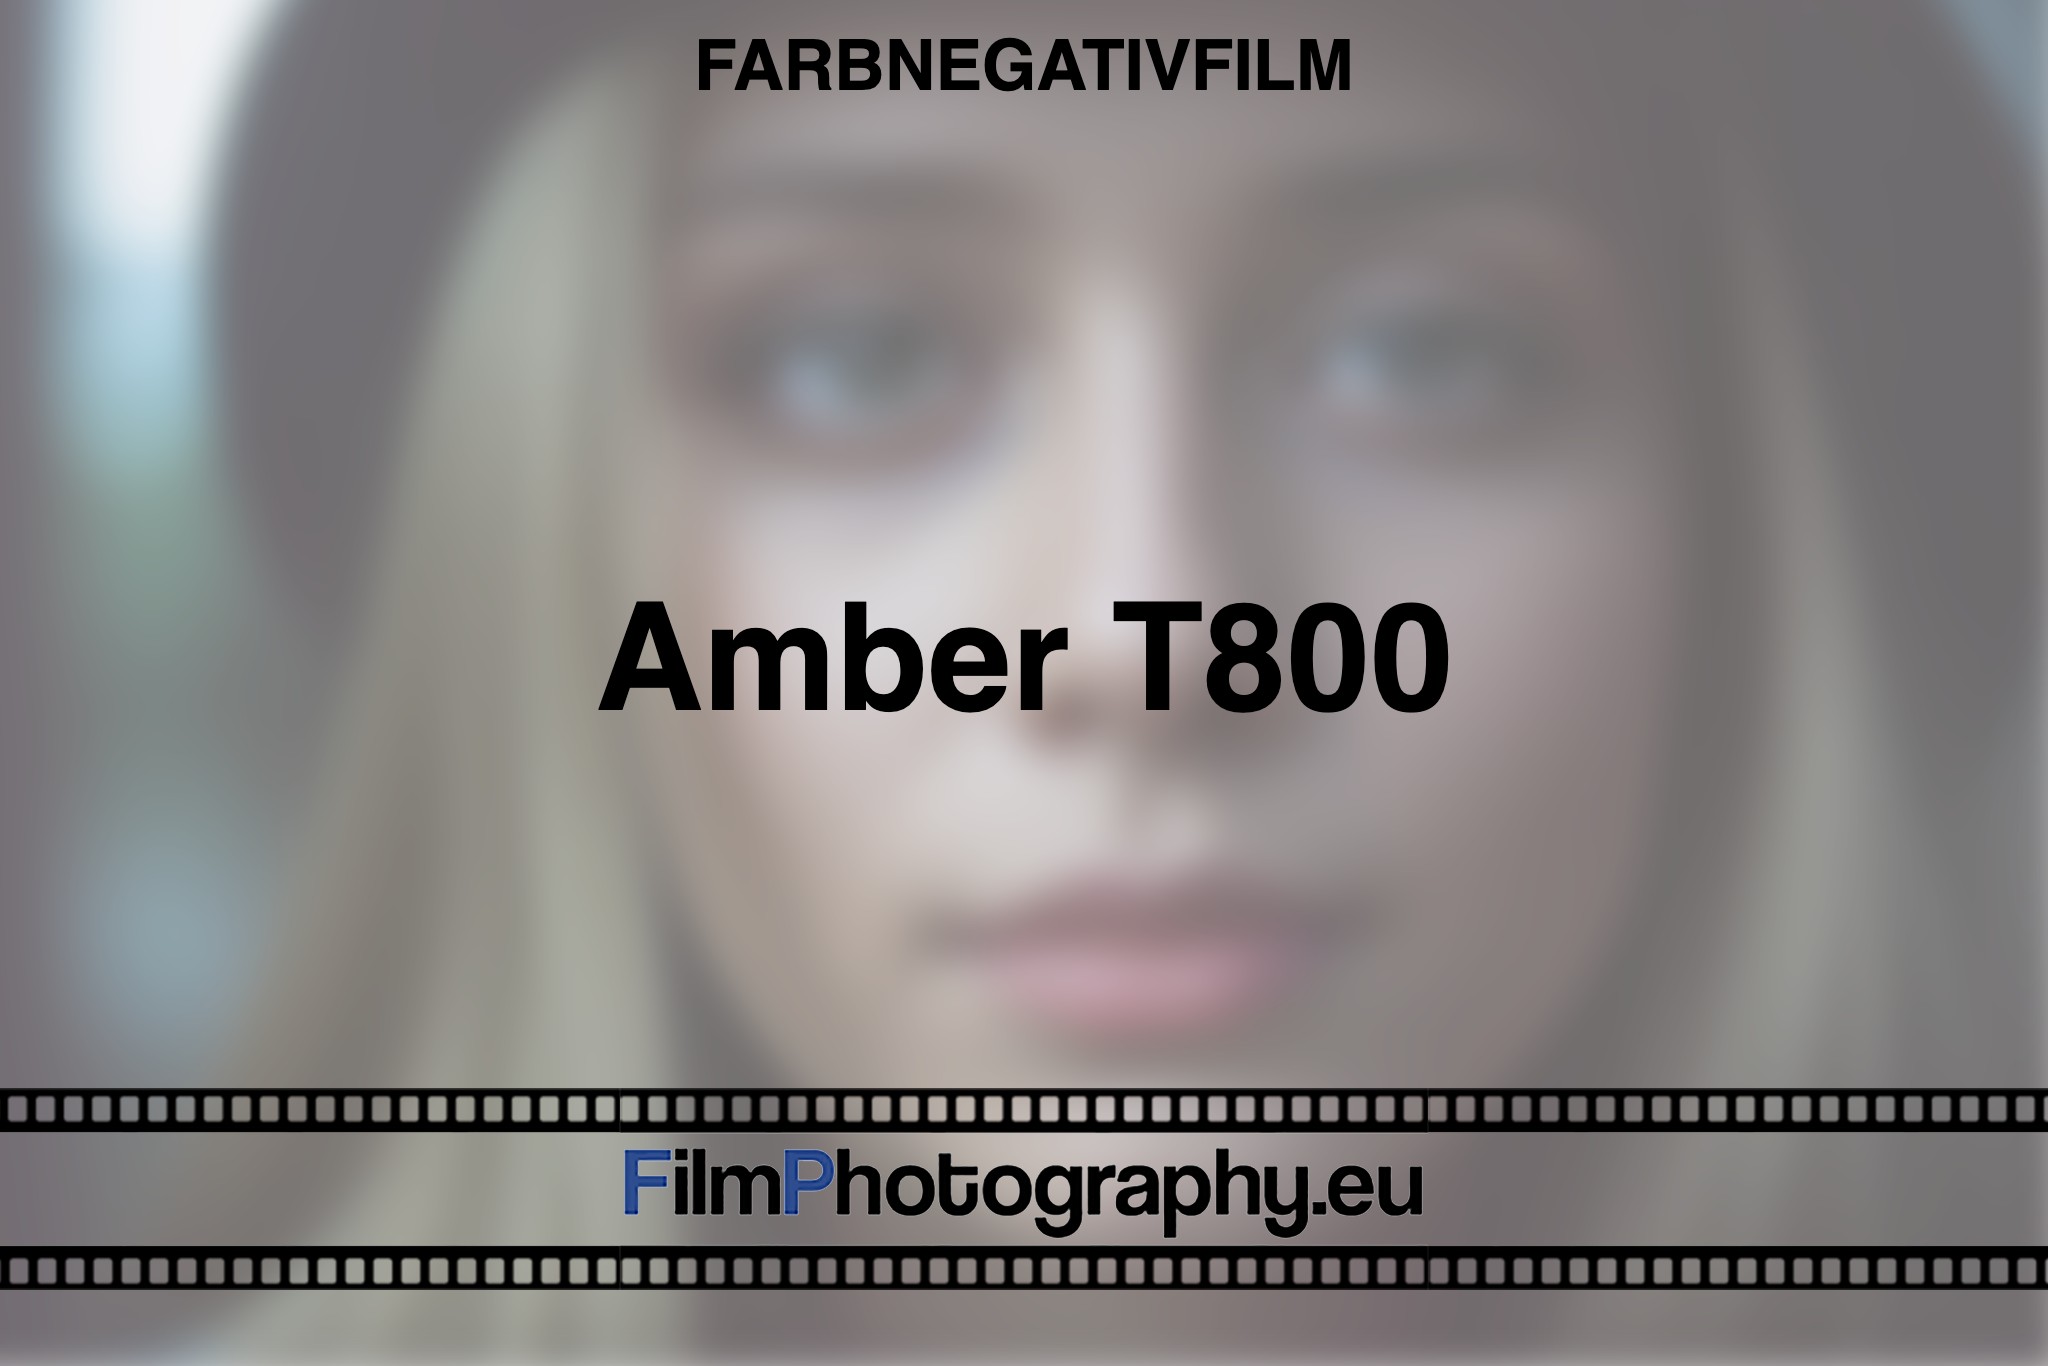 Amber-T800-Farbnegativfilm-bnv